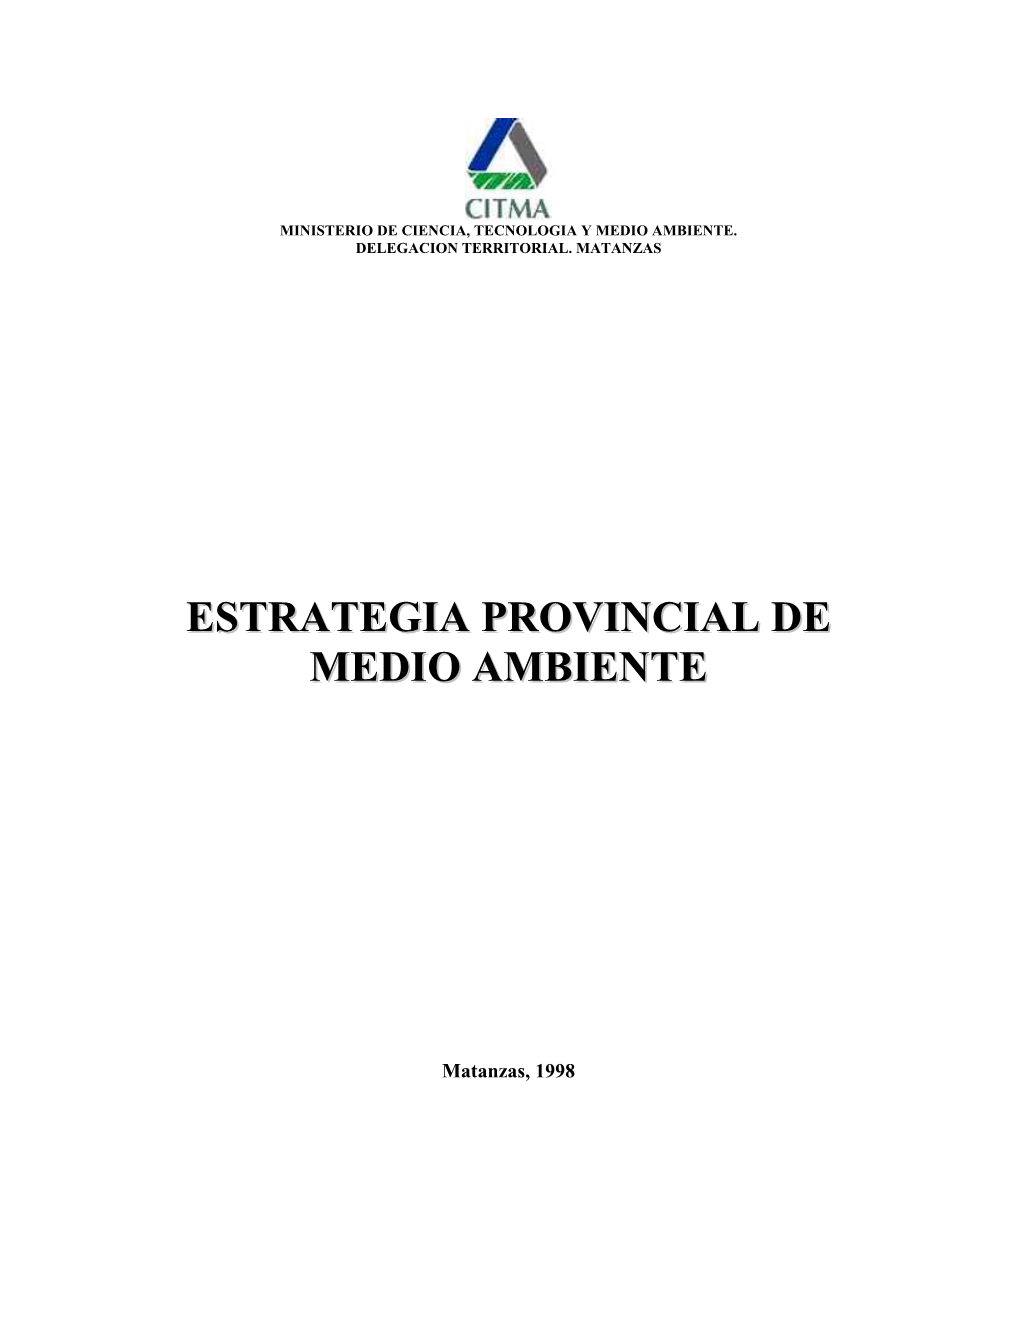 Estrategia Ambiental Provincial